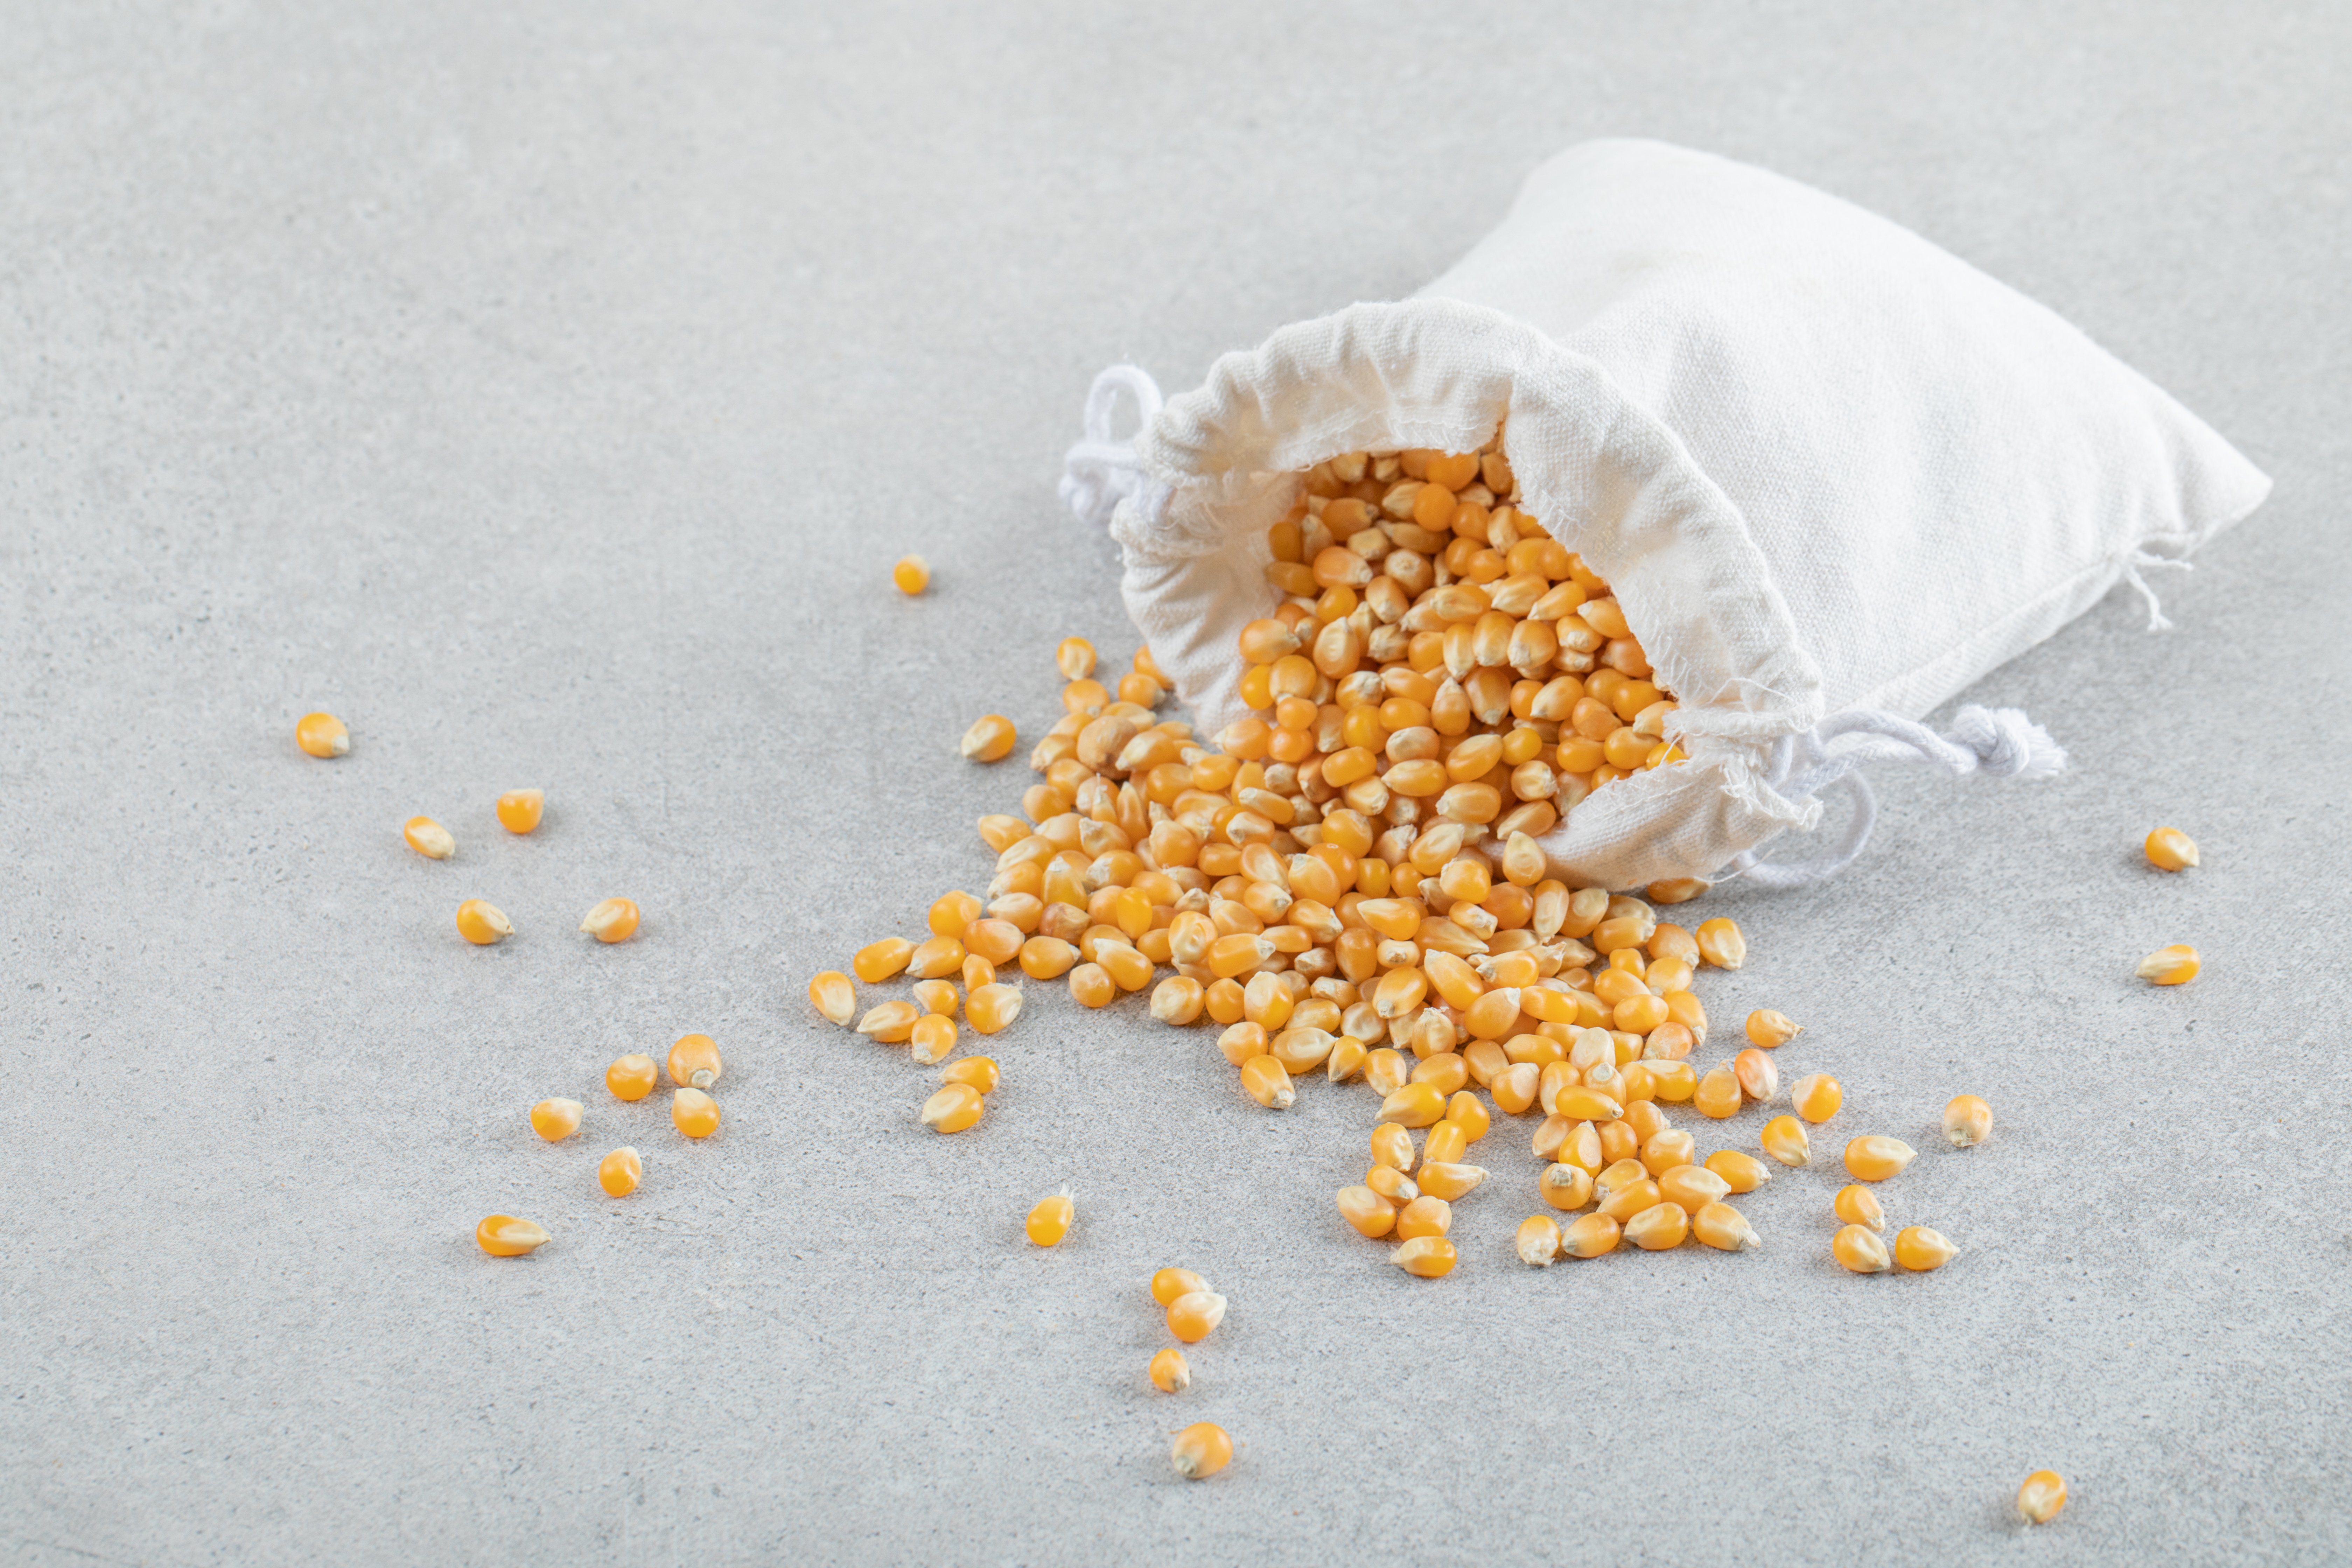 Saco branco cheio de grãos de milho, posicionado no chão com uma boa quantidade de grãos de milho espalhadas em volta.